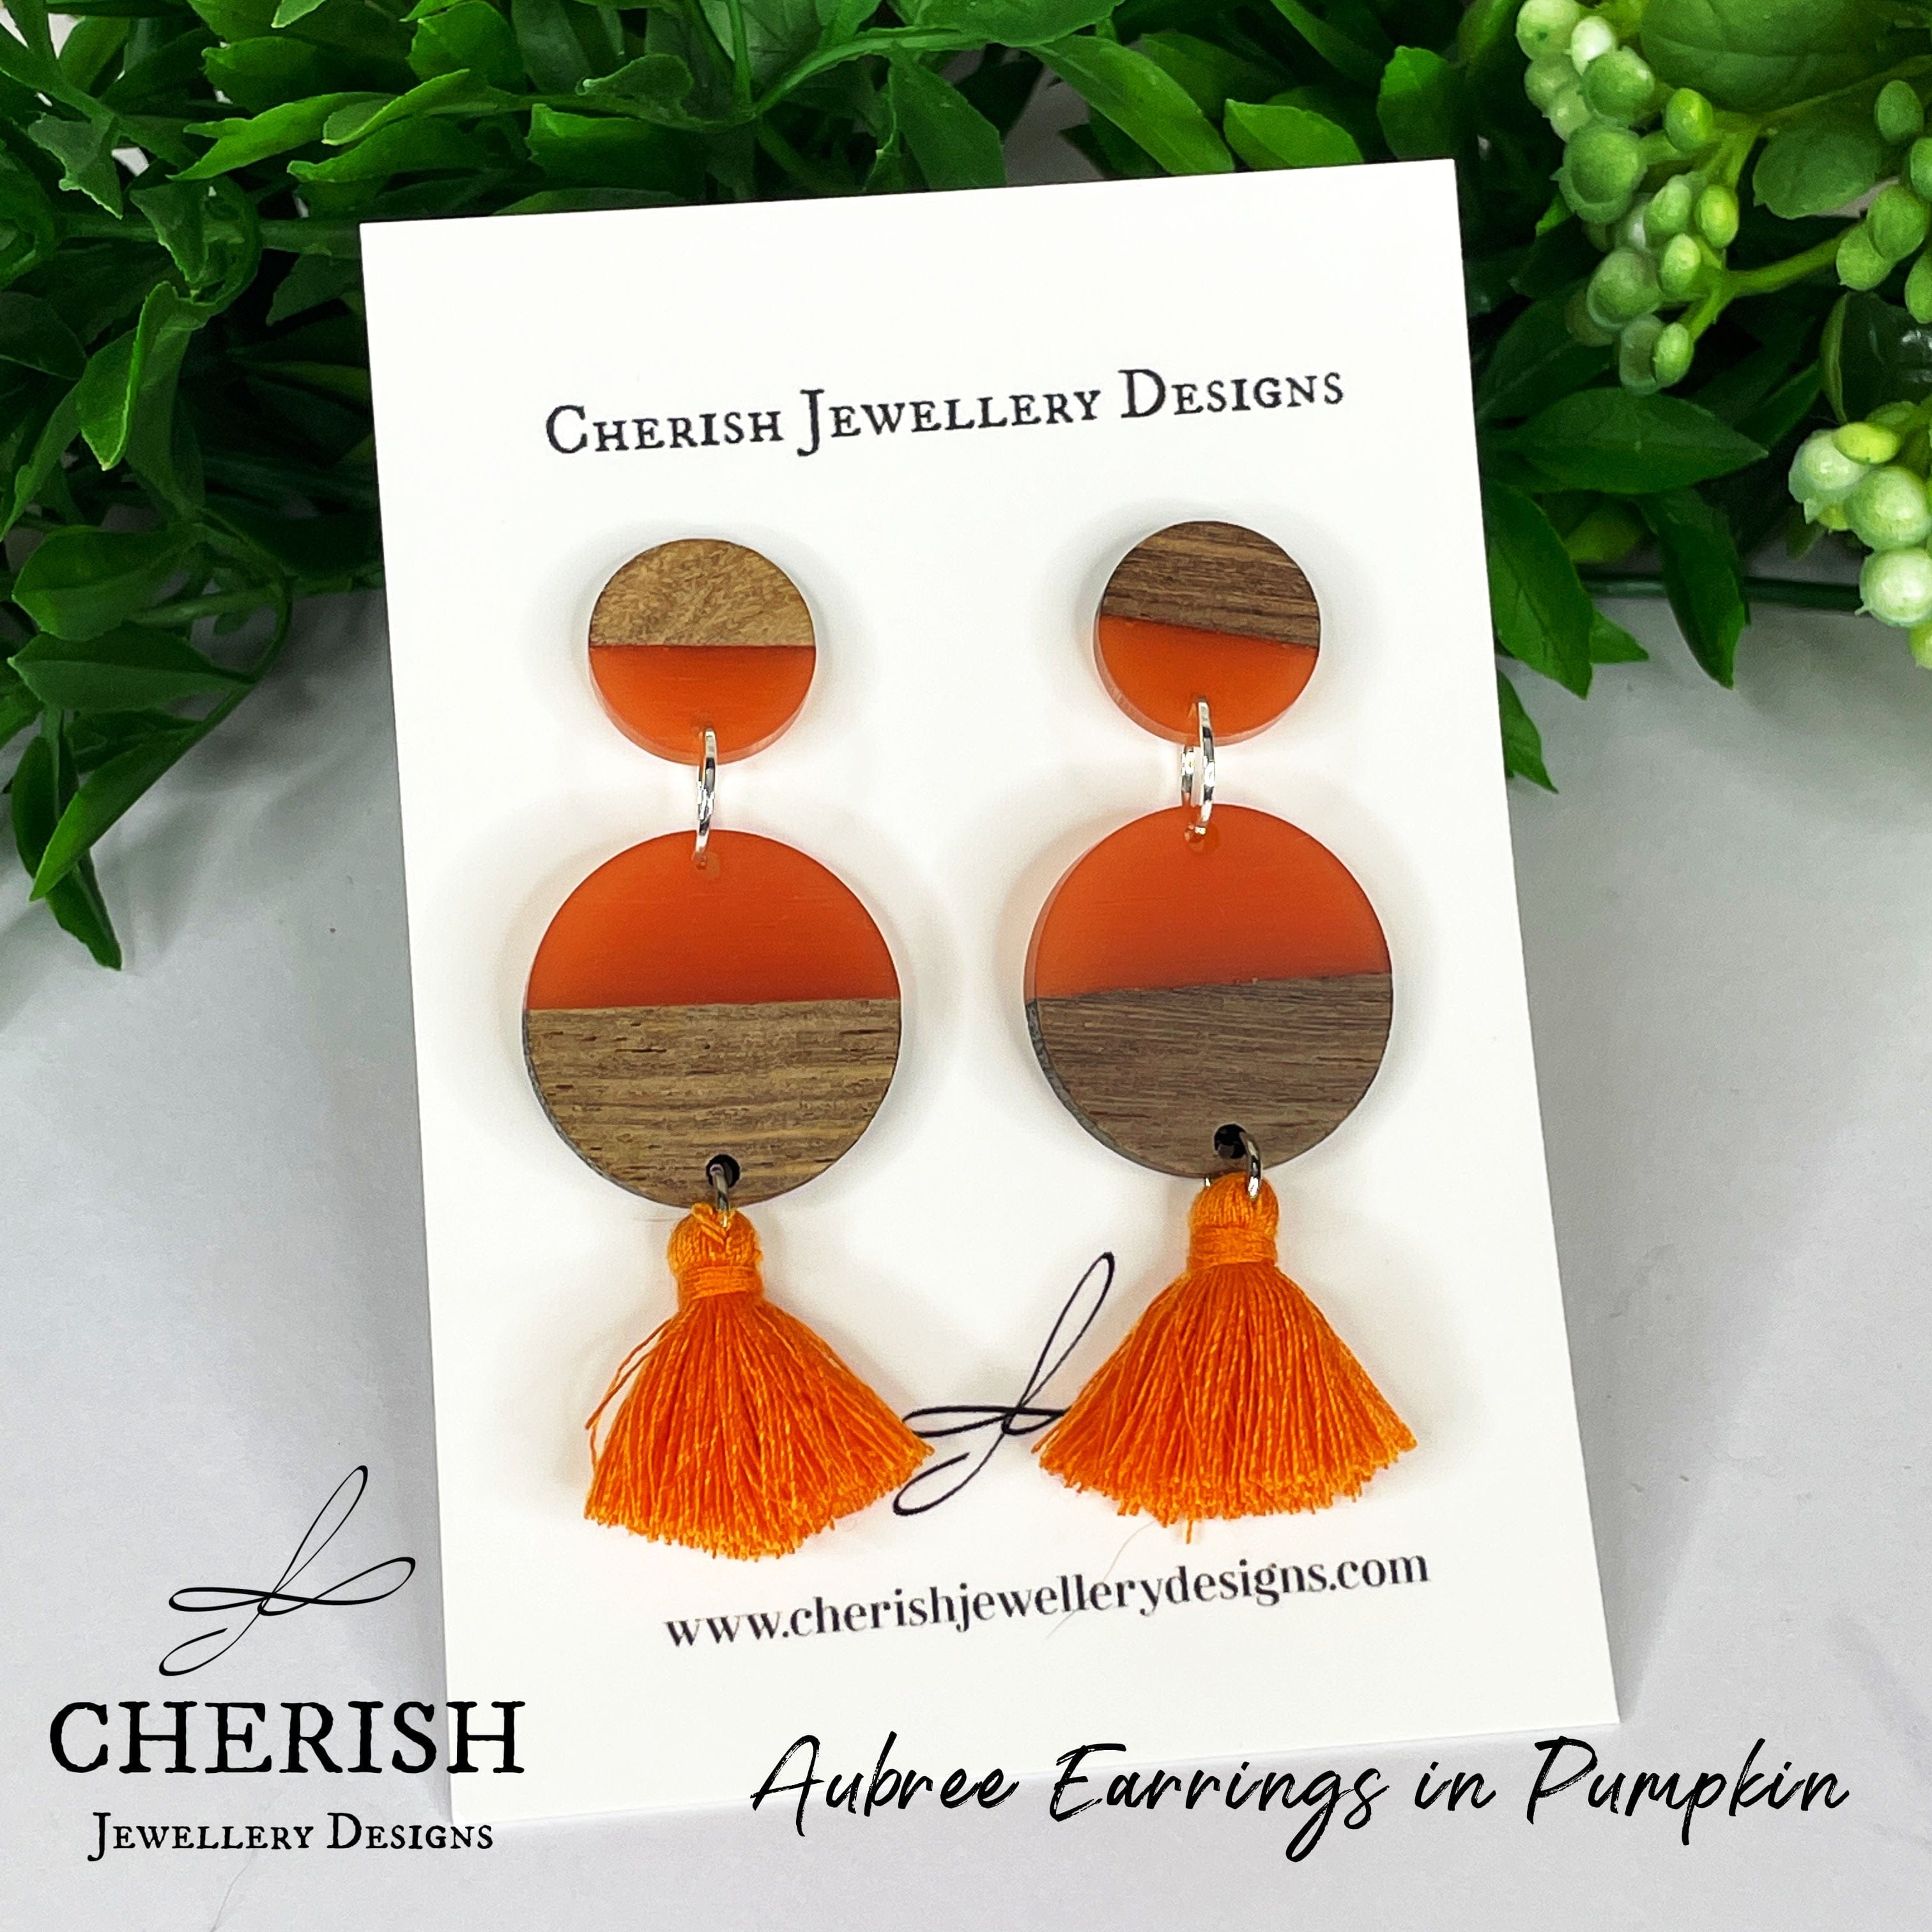 Aubree Earrings in Pumpkin